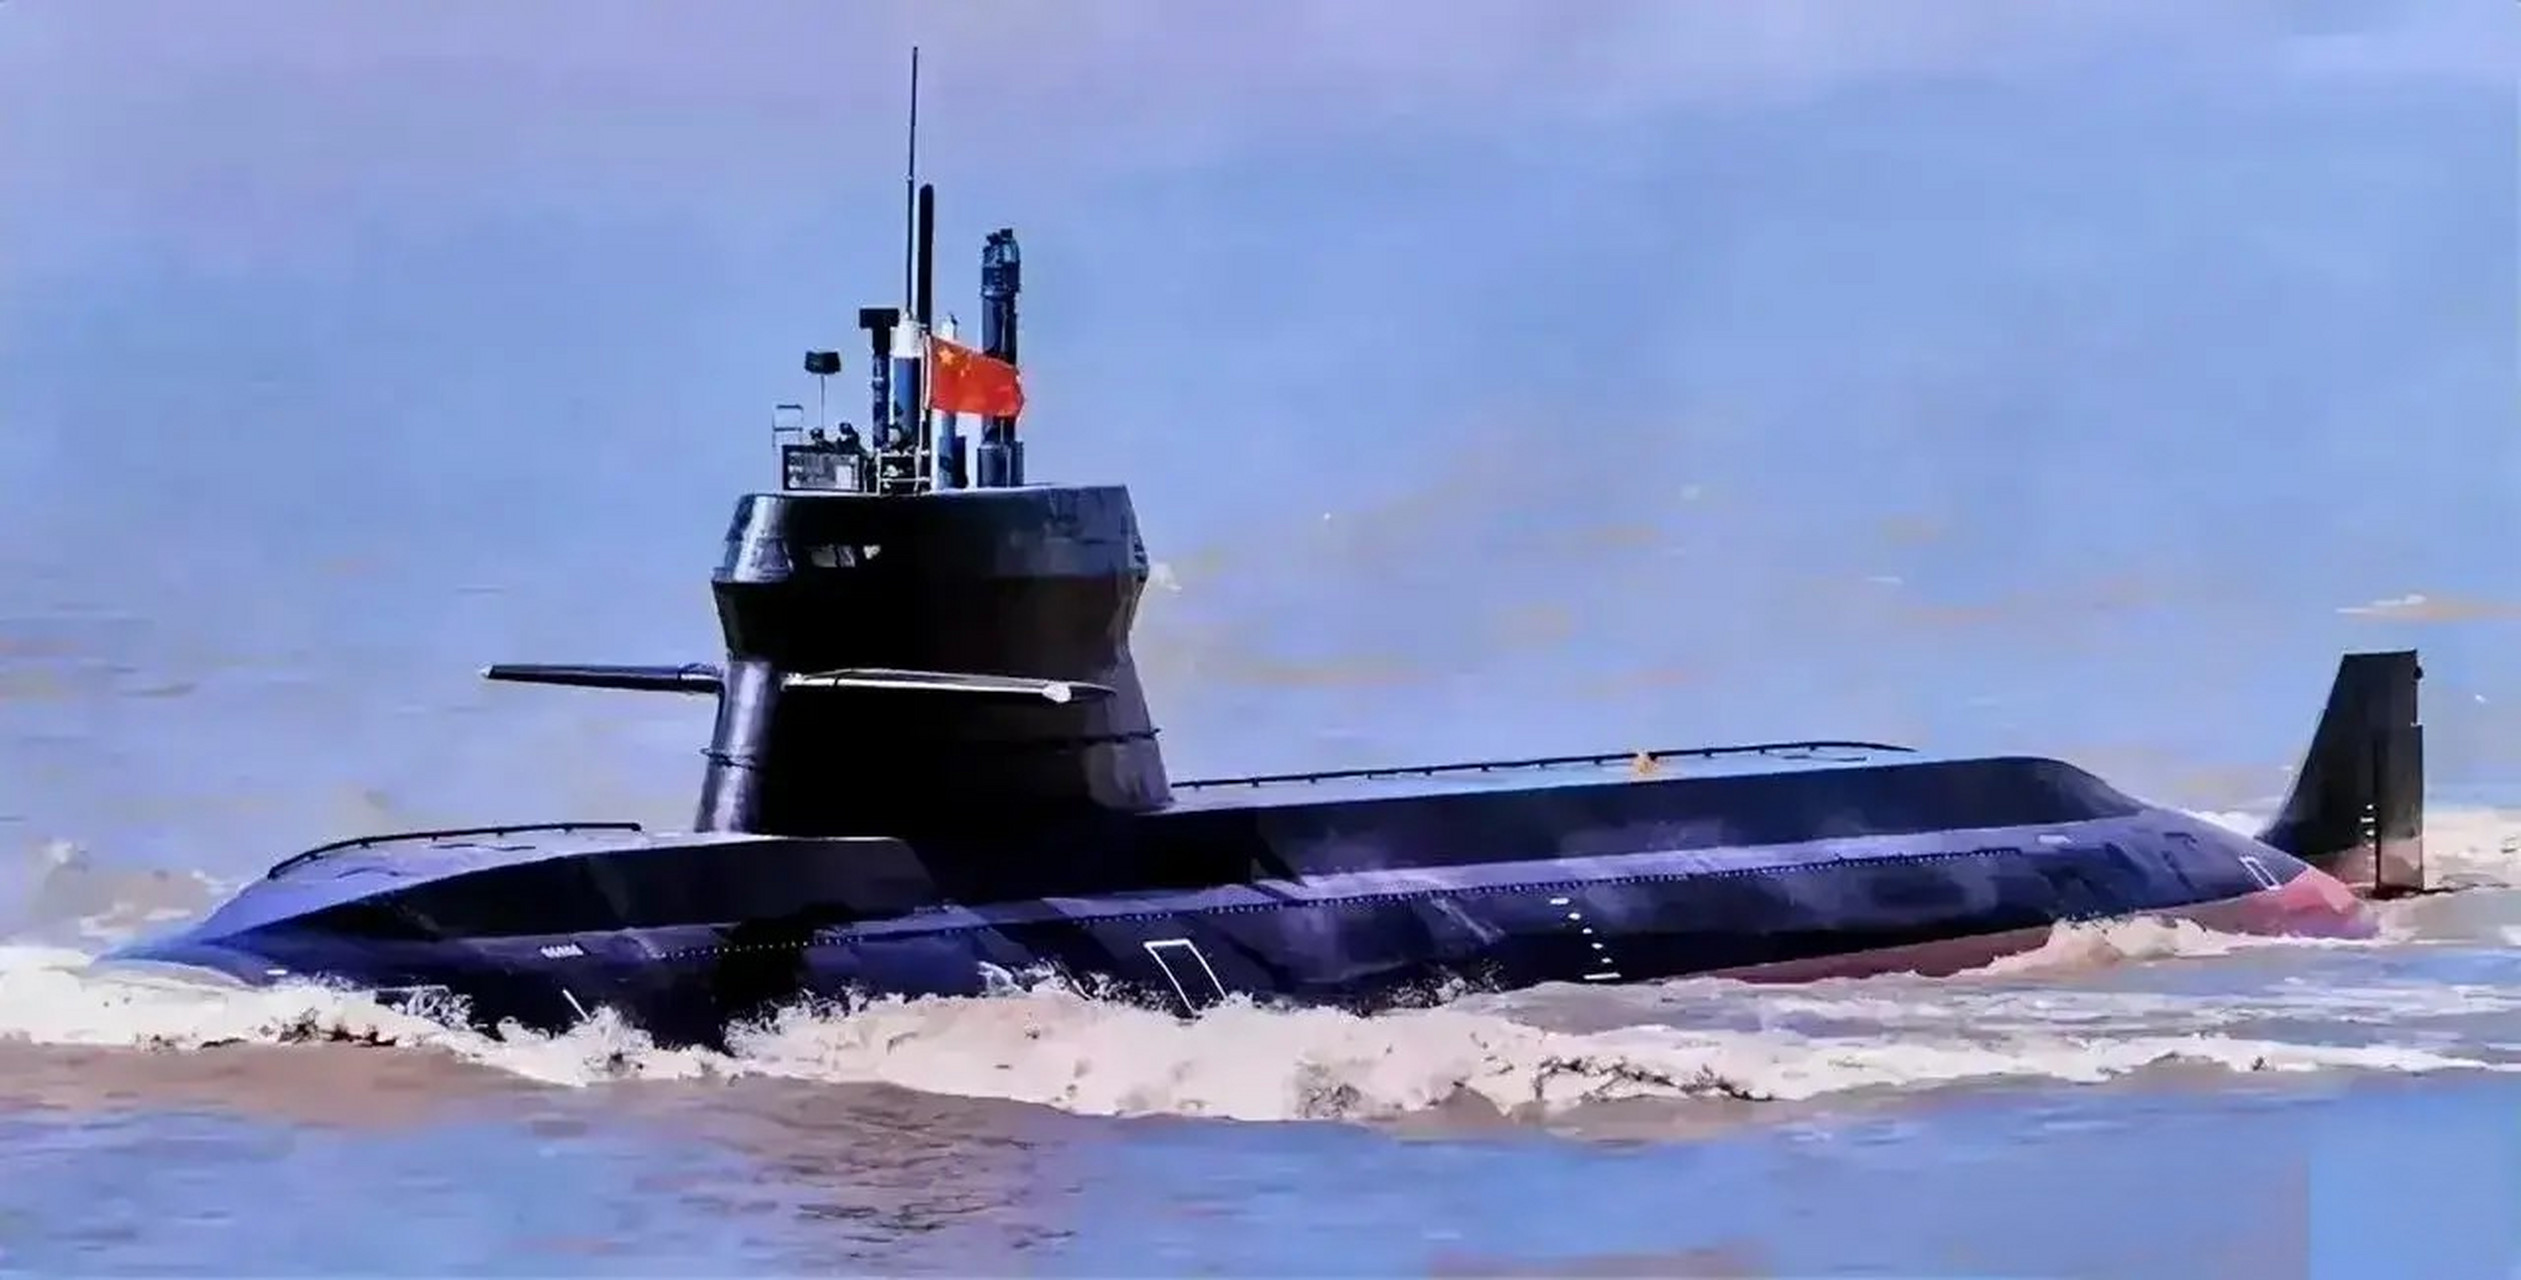 中国发布最新款常规潜艇,039c型指挥塔设计颠覆传统,外形科幻,引领